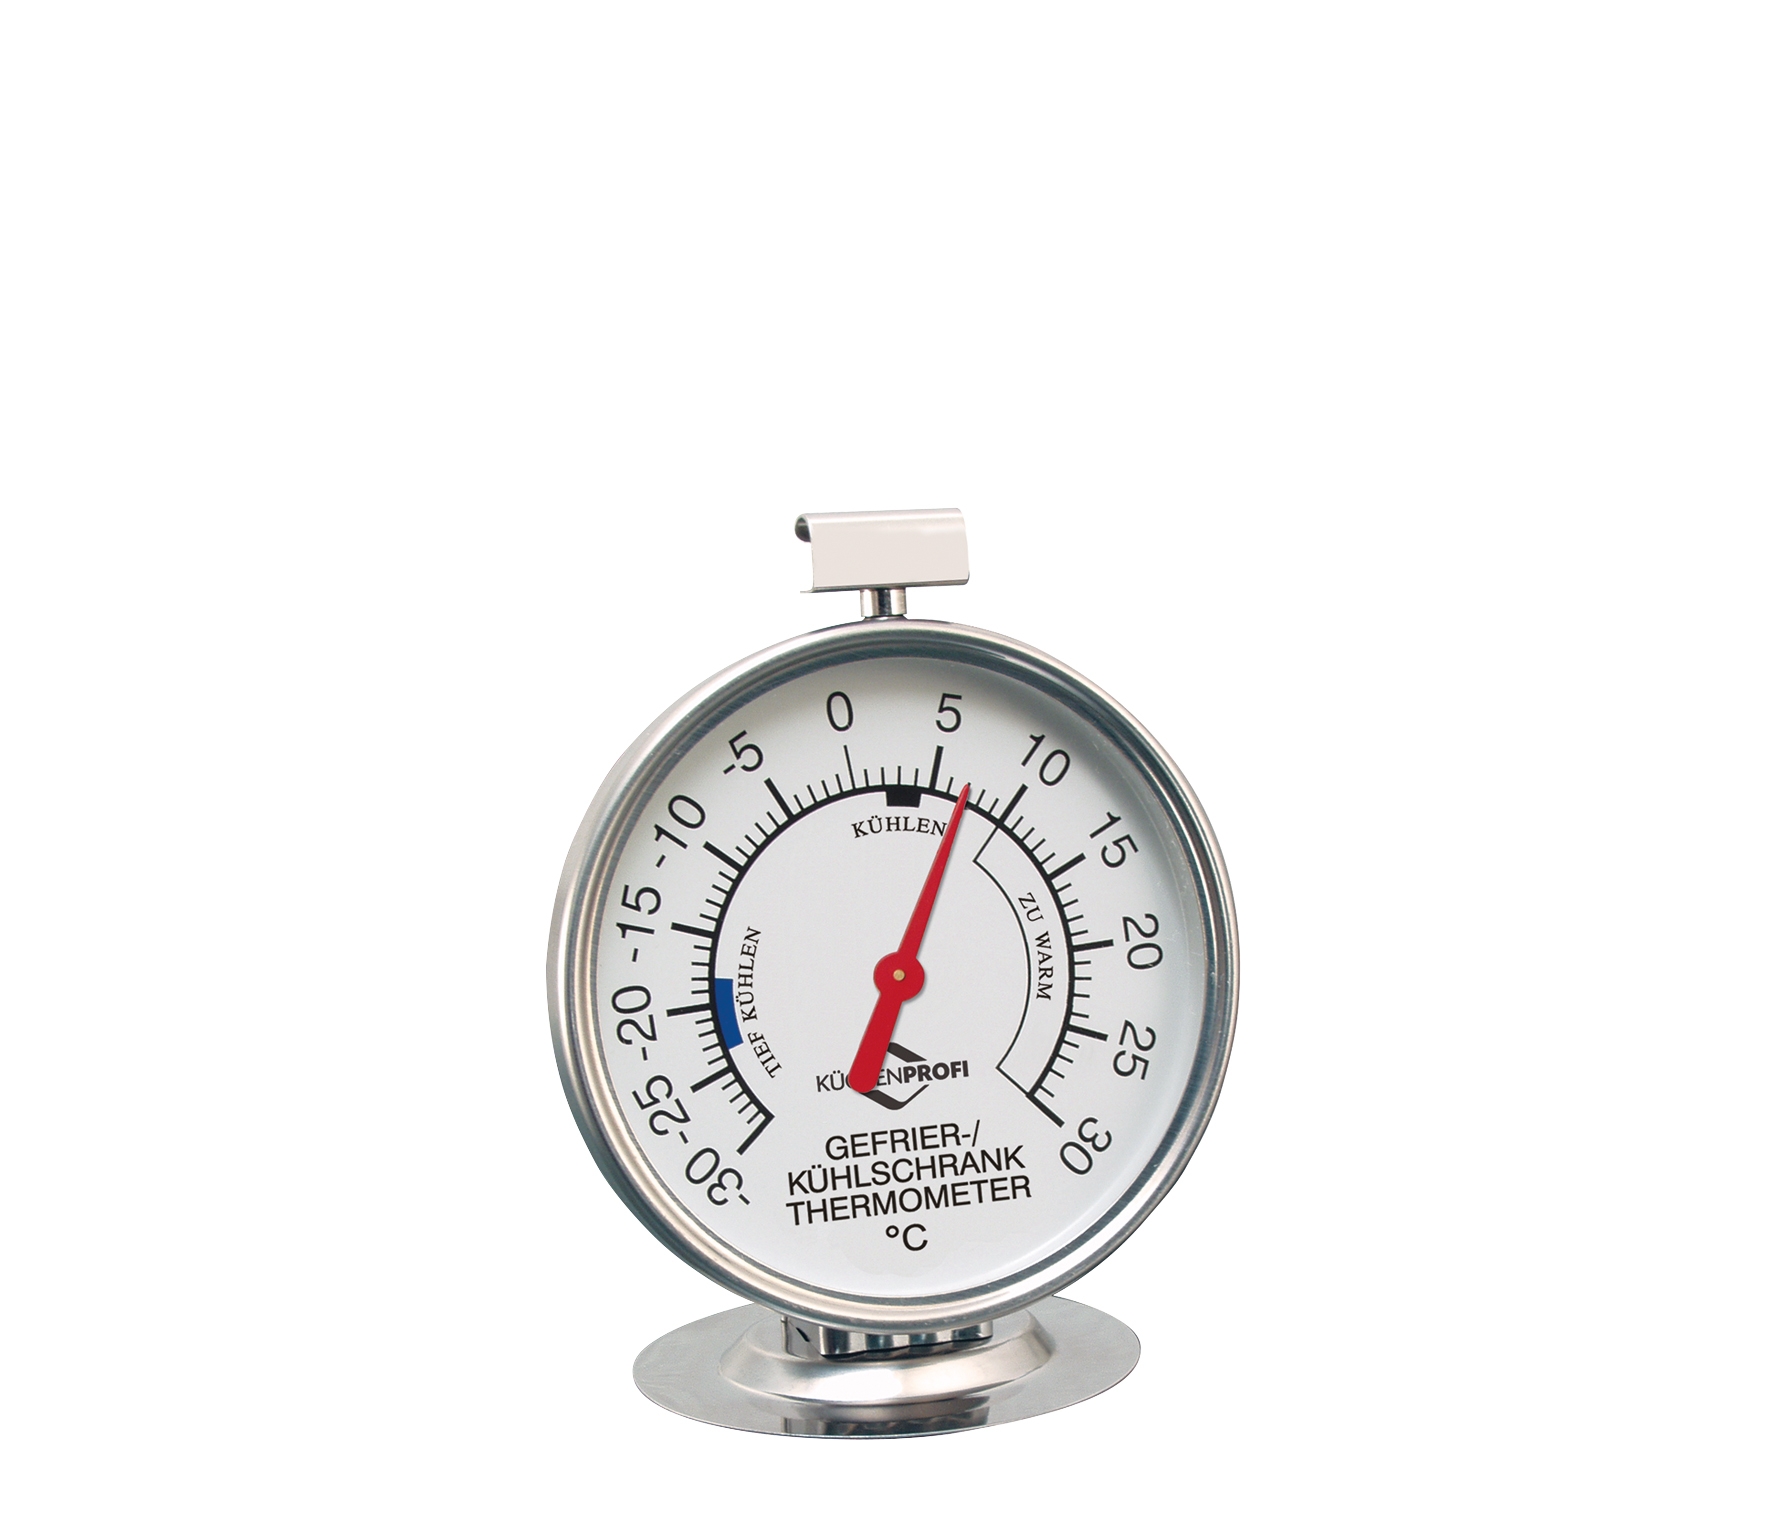 Kühlschrank-Thermometer Ø: 7,5 cm  von - 30° bis + 30°C + auch zum Hängen geeignet  